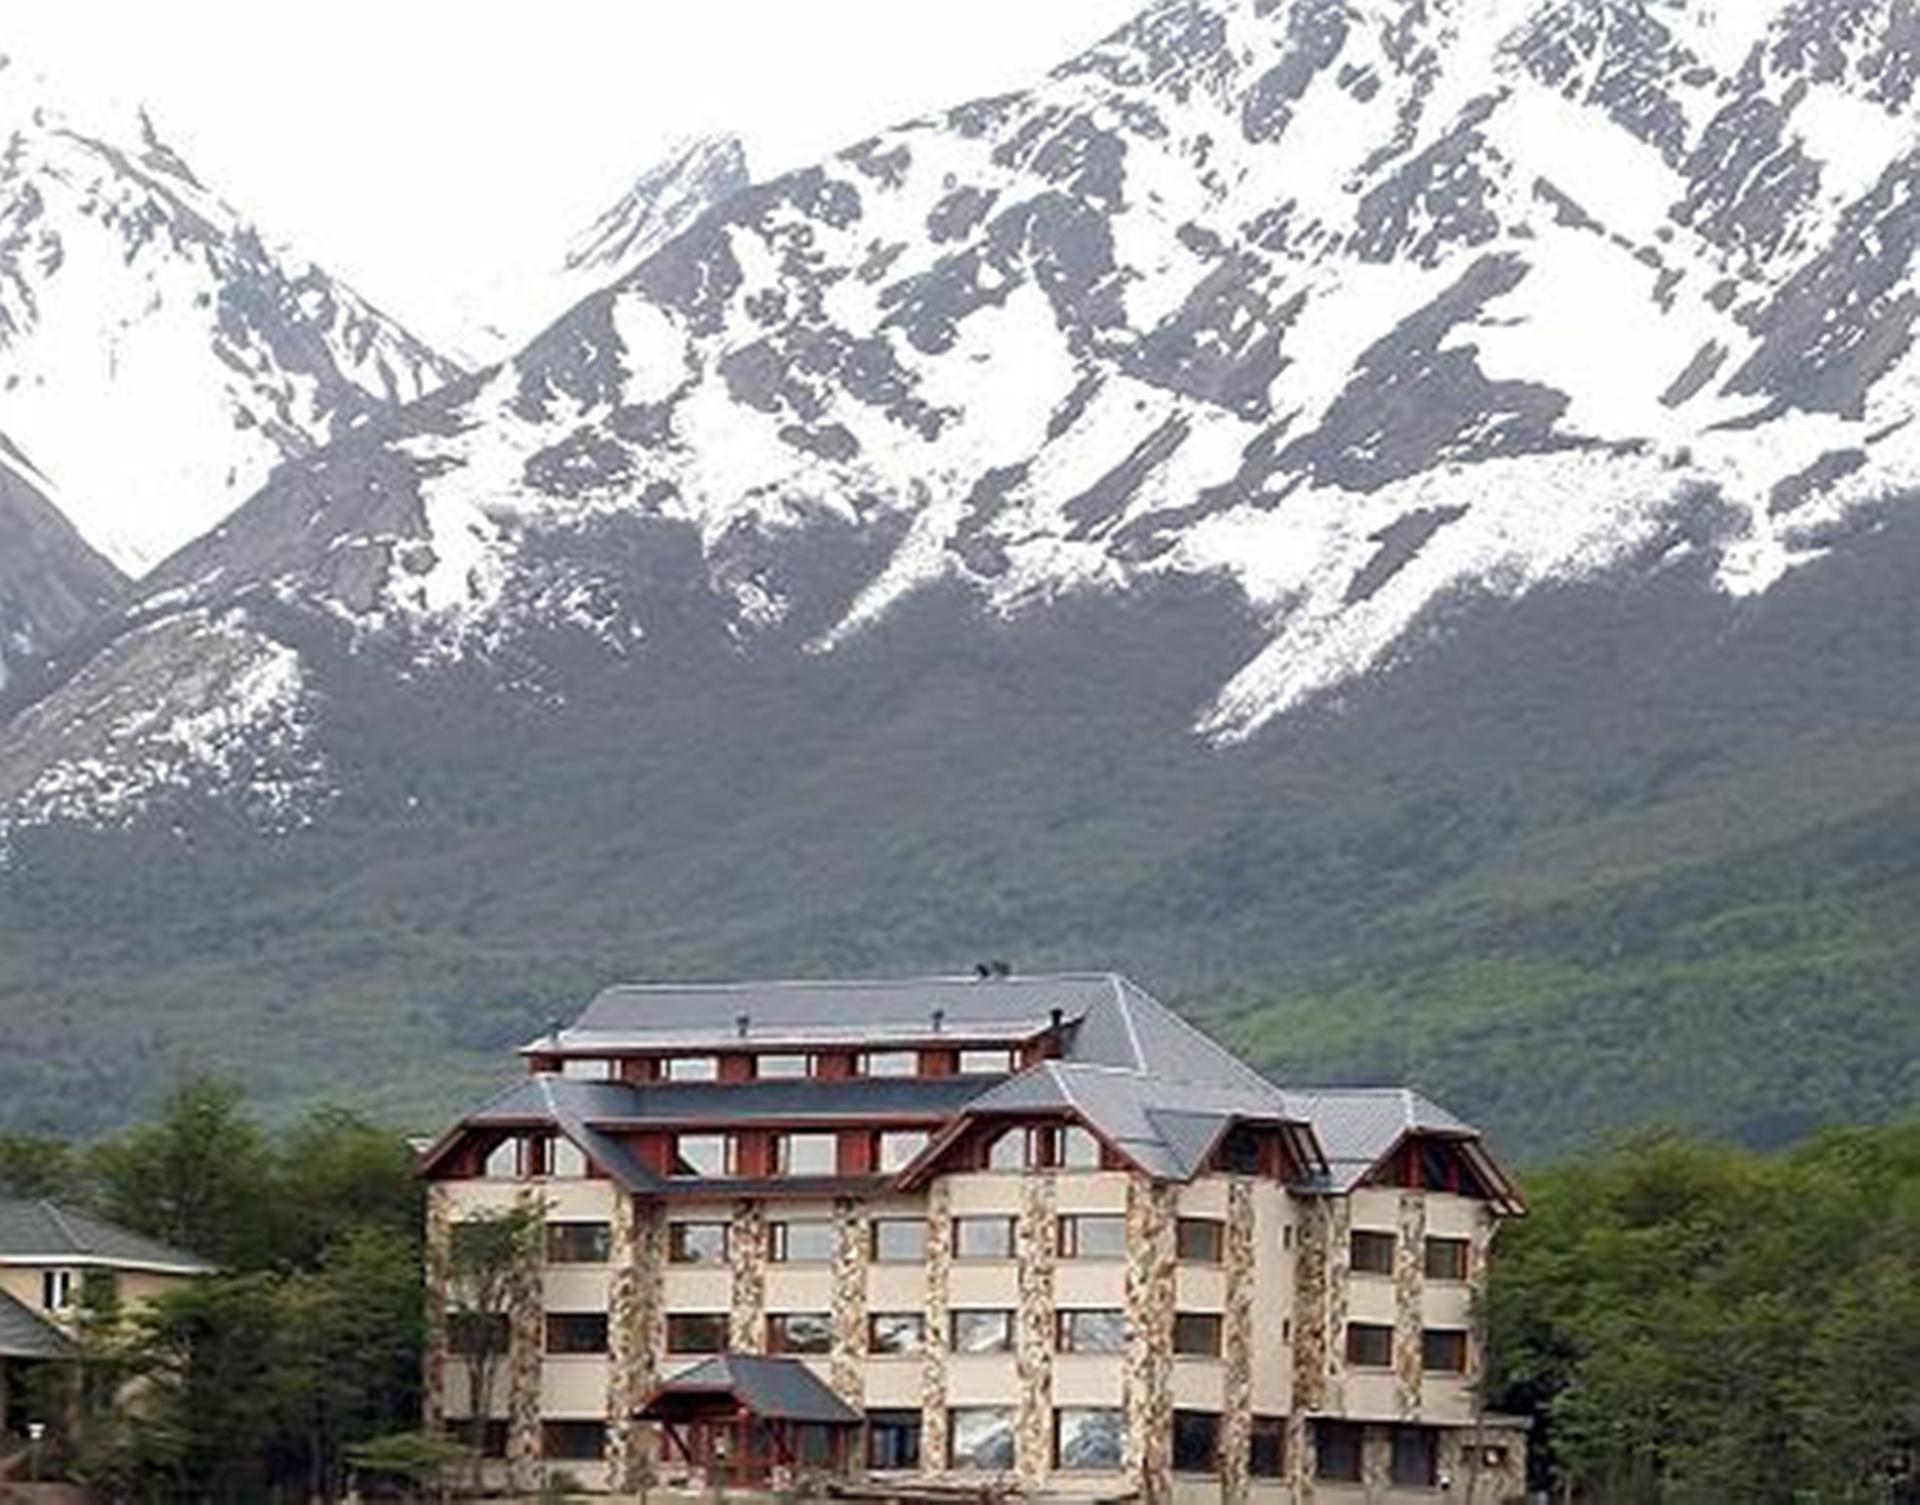 Costa Ushuaia Hotell Eksteriør bilde